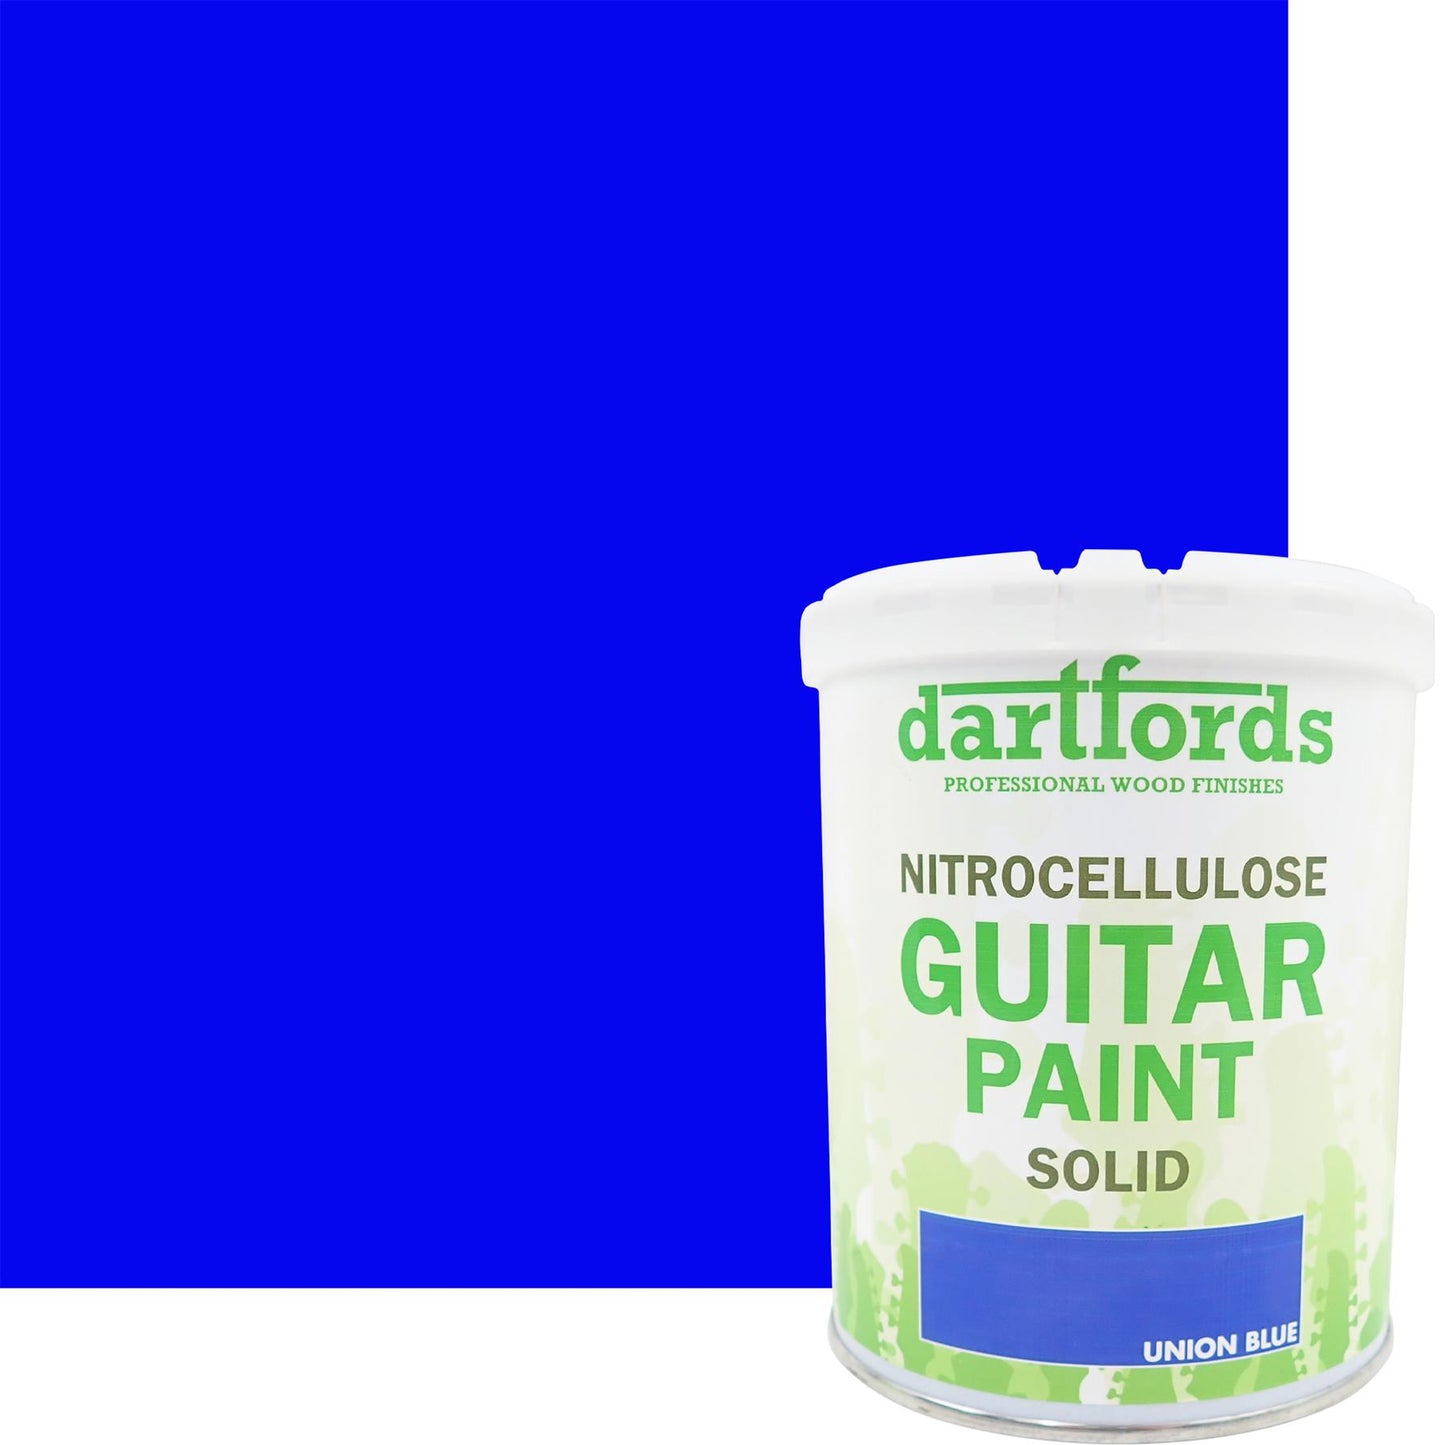 dartfords Union Blue Nitrocellulose Guitar Paint - 1 litre Tin